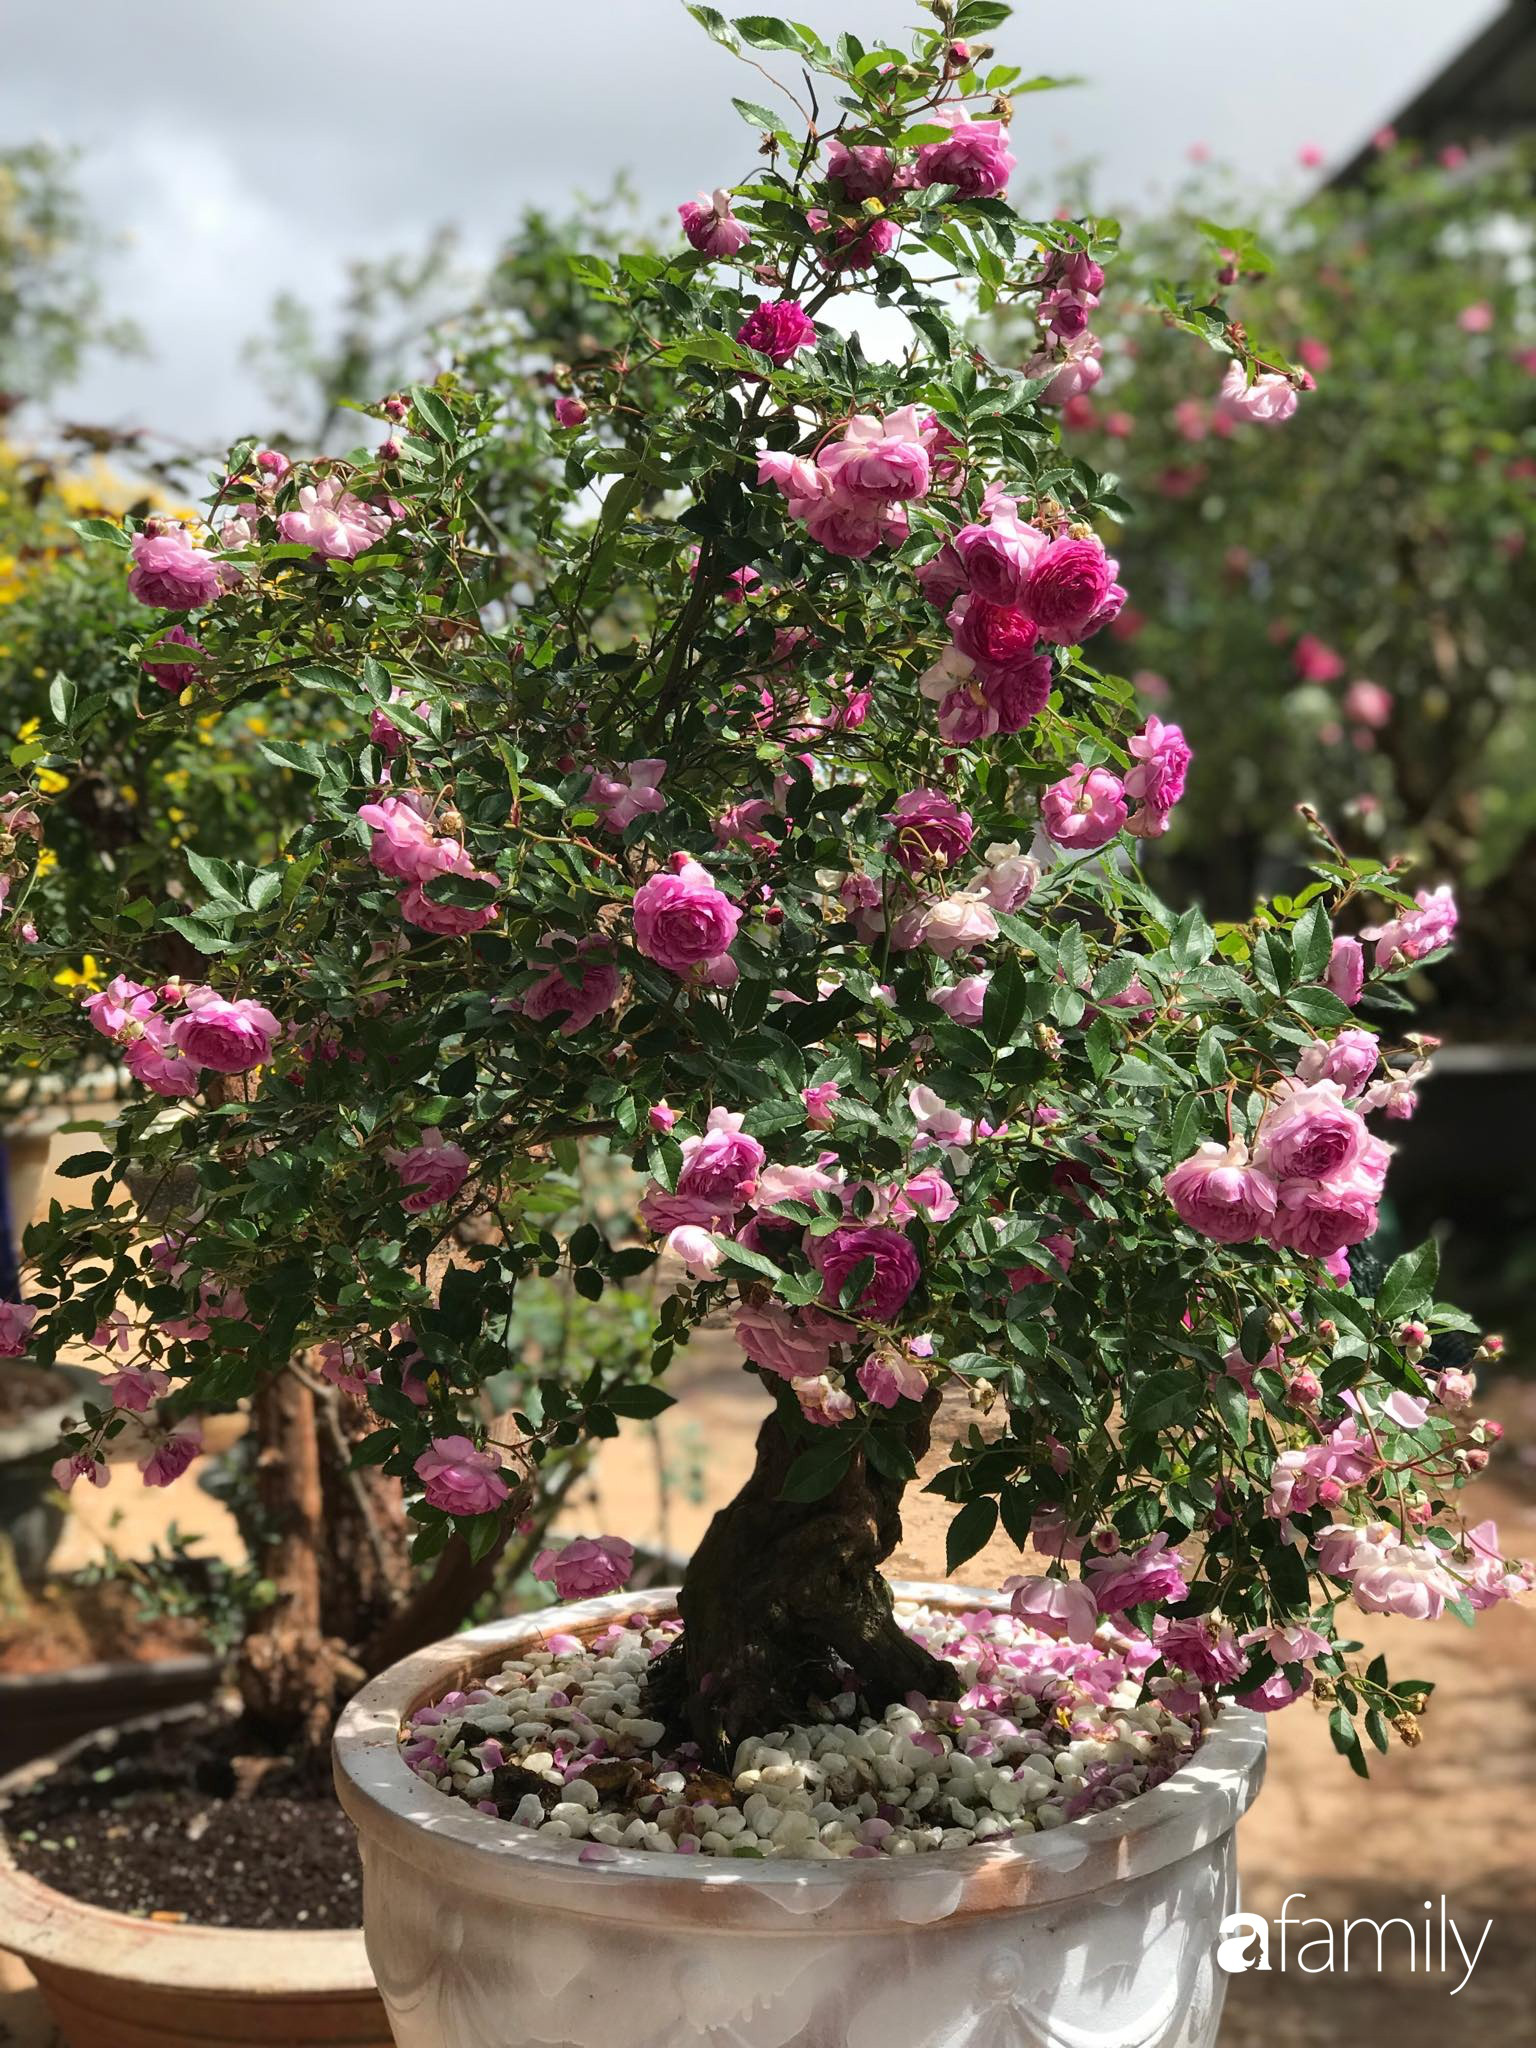 Ngắm vườn hồng bonsai tiền tỉ rực rỡ tỏa hương trên đồi núi ở Đà Lạt - Ảnh 5.